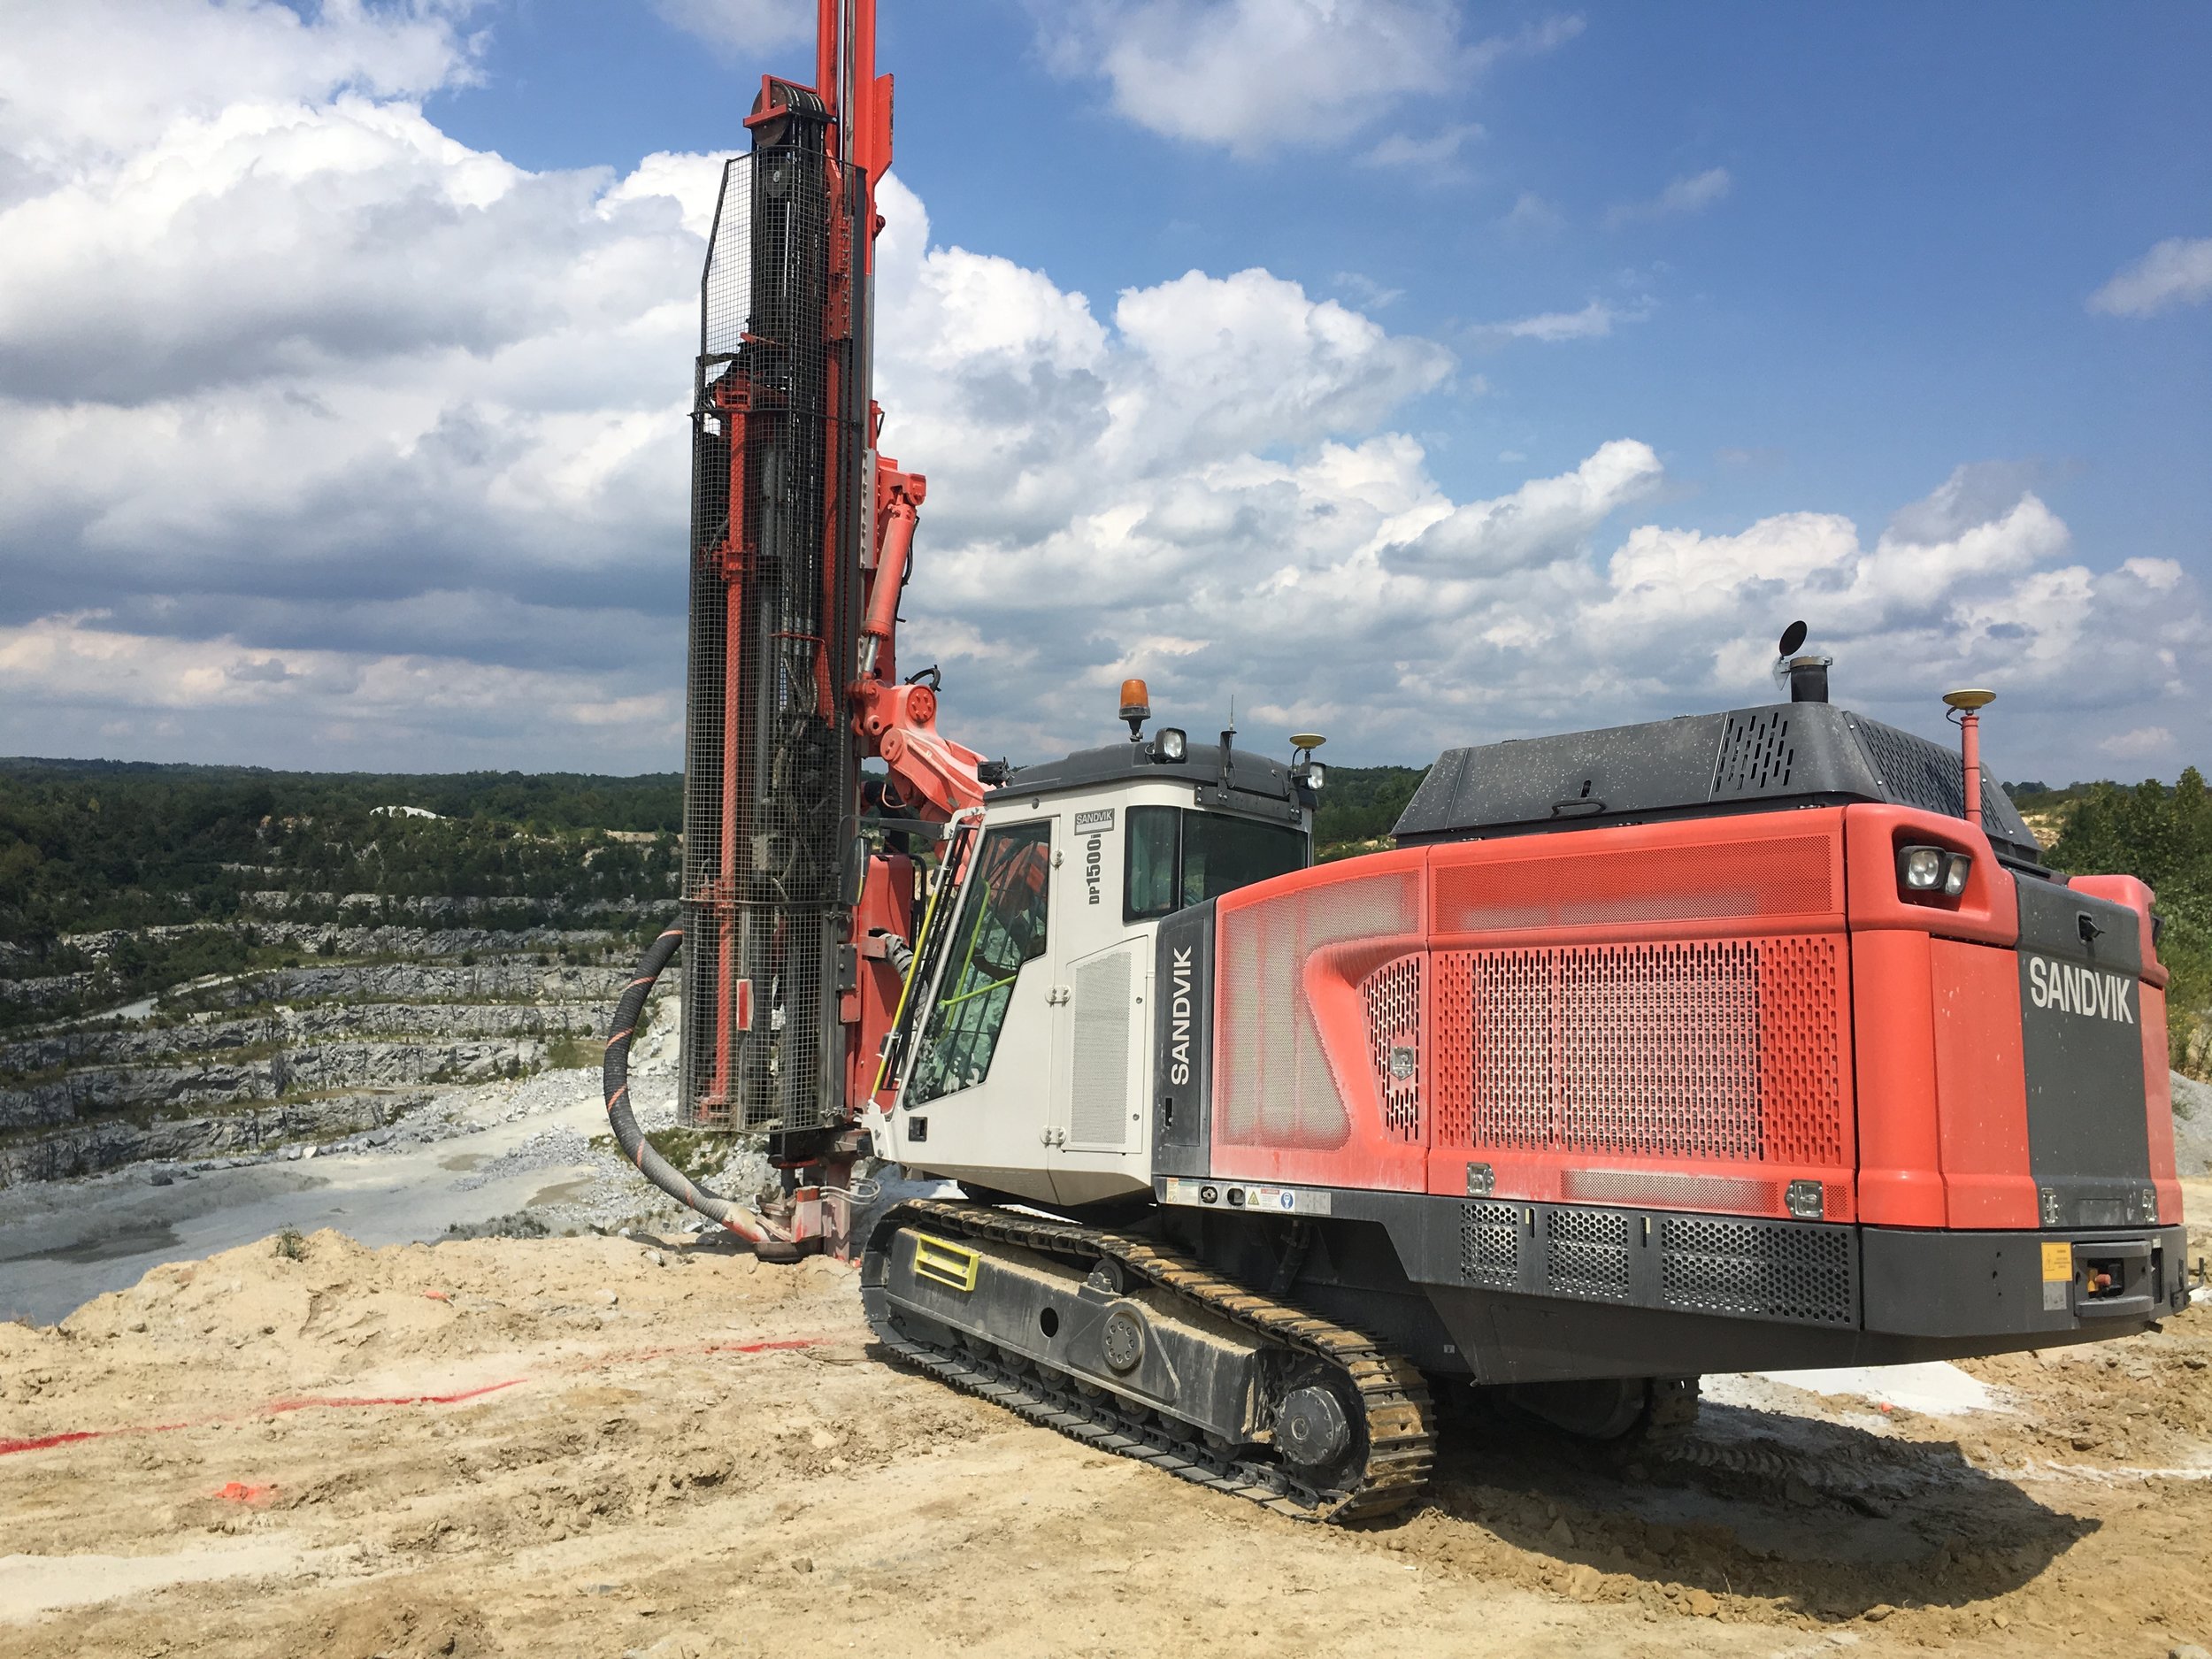 Sandvik DP1500i drill rig at a project site